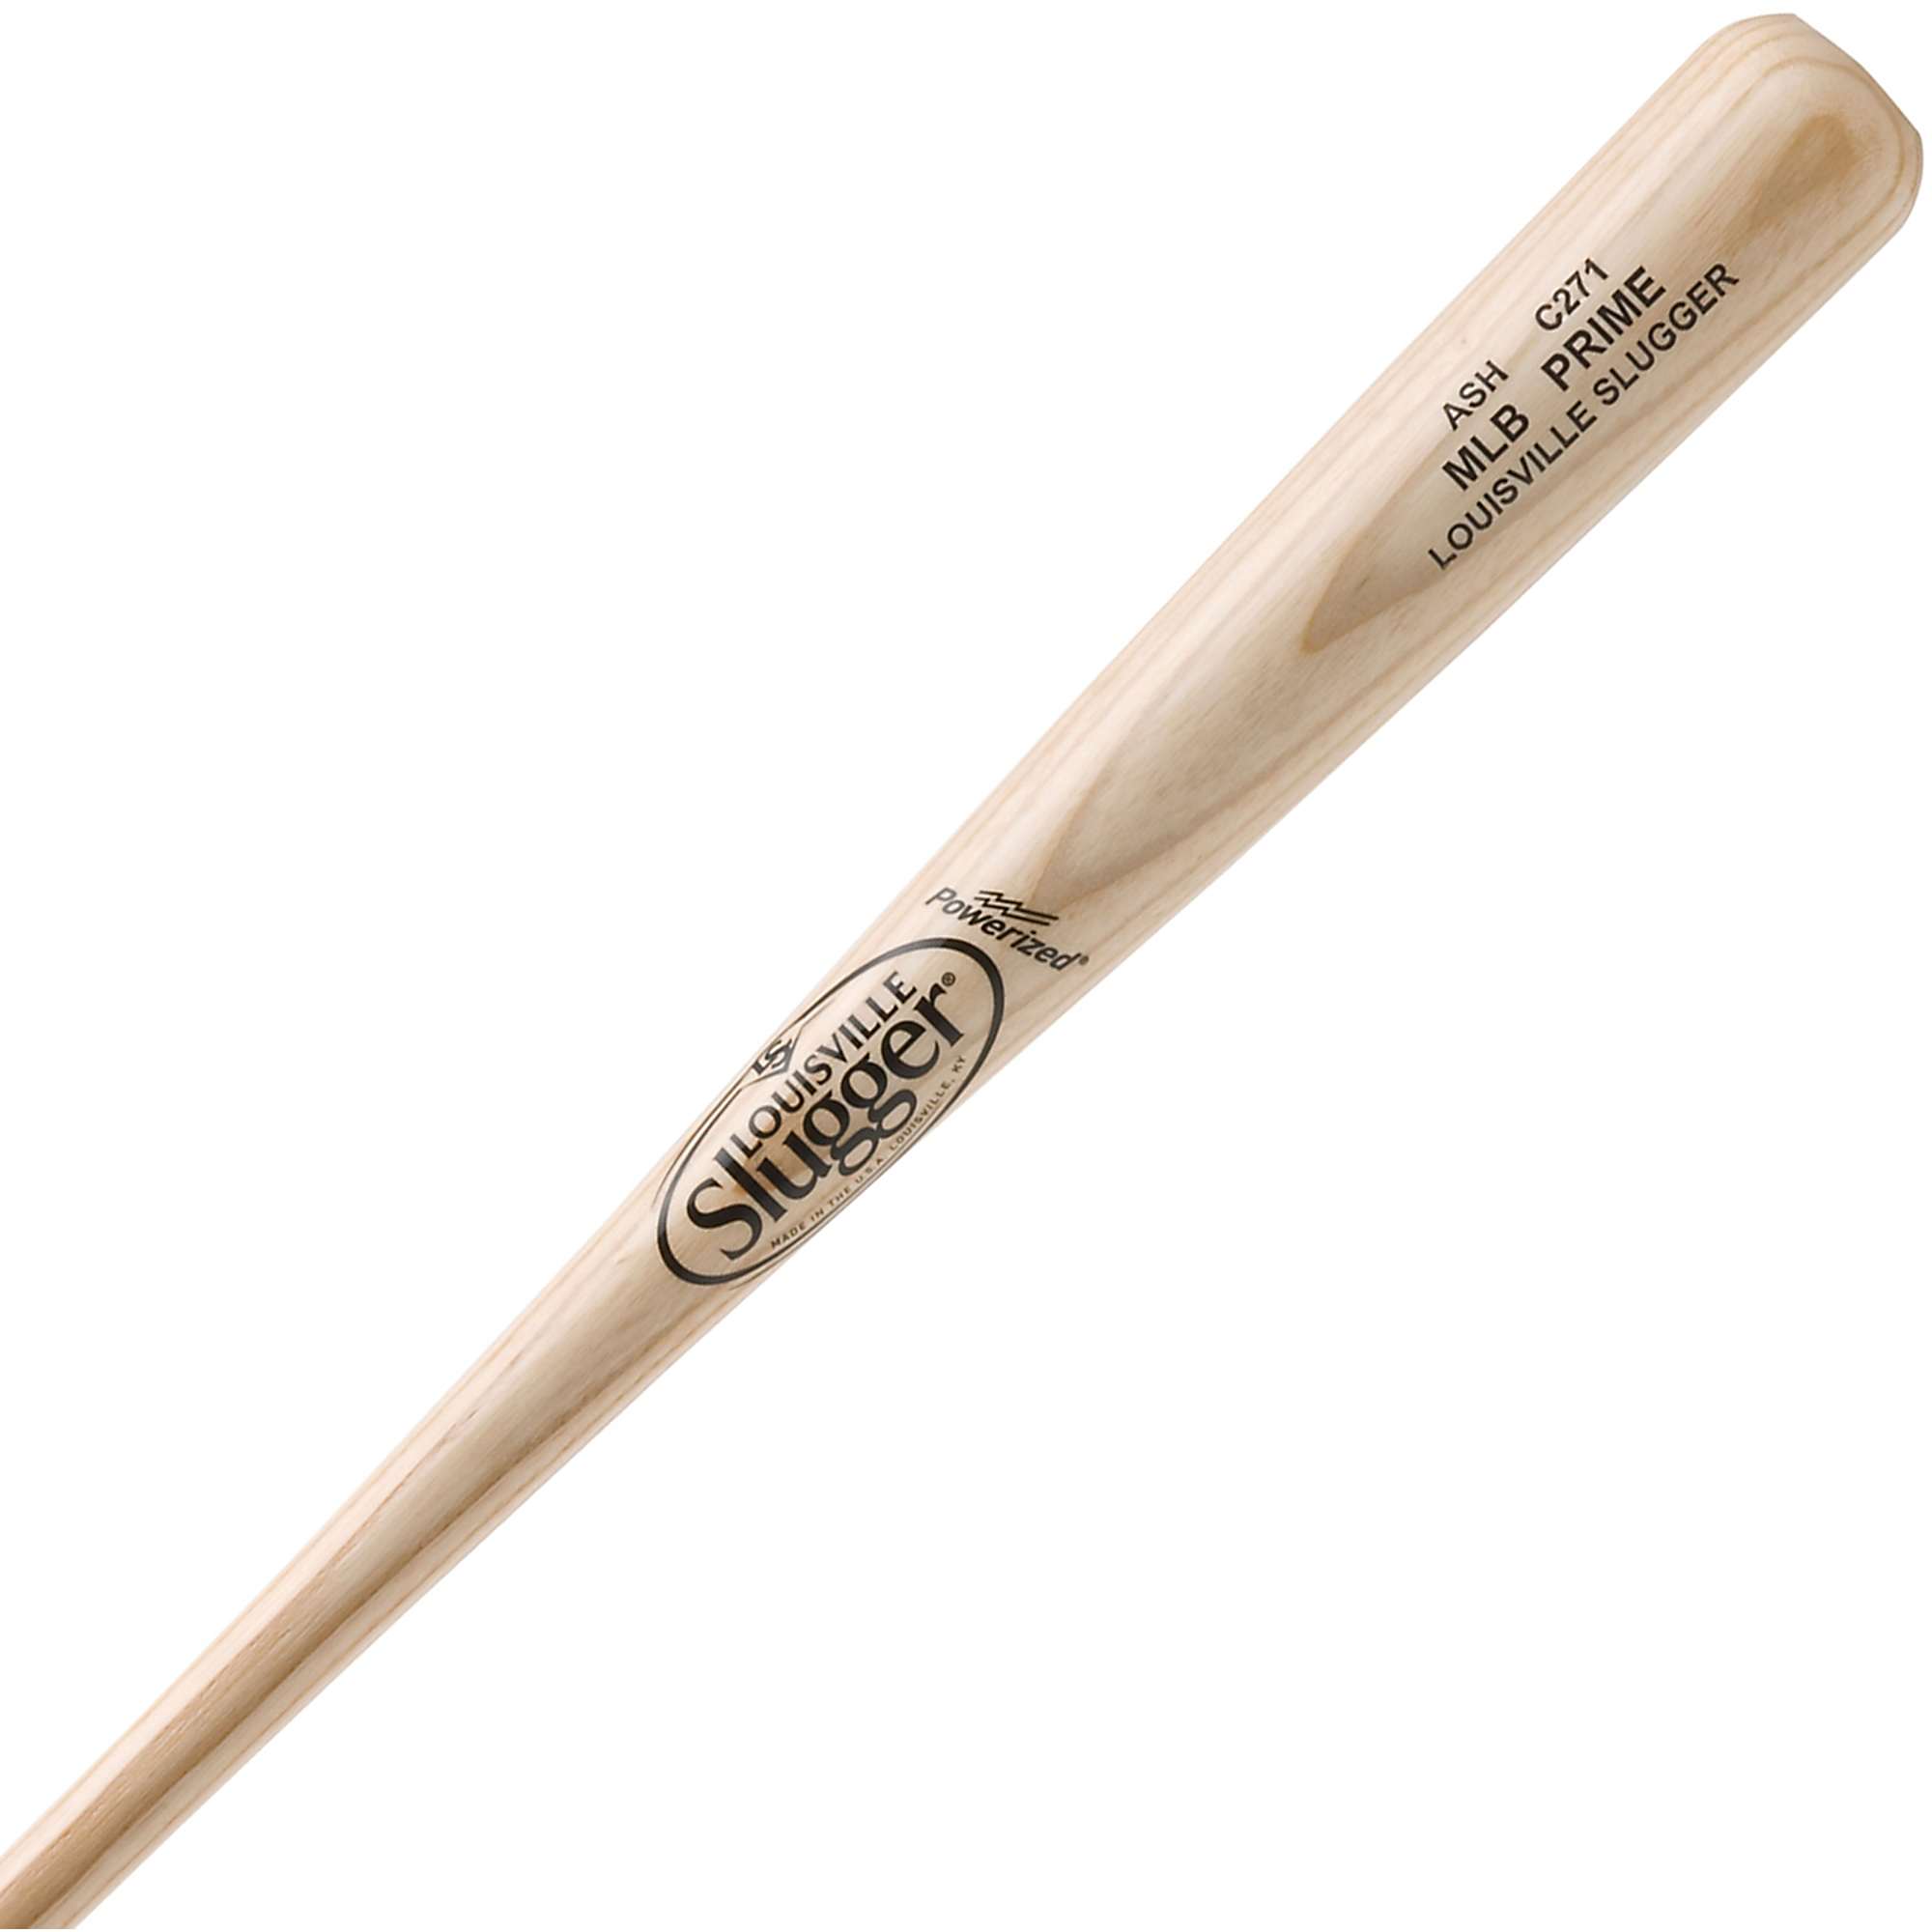 Louisville Slugger 2015 MLB Prime Ash Wood Baseball Bats | eBay